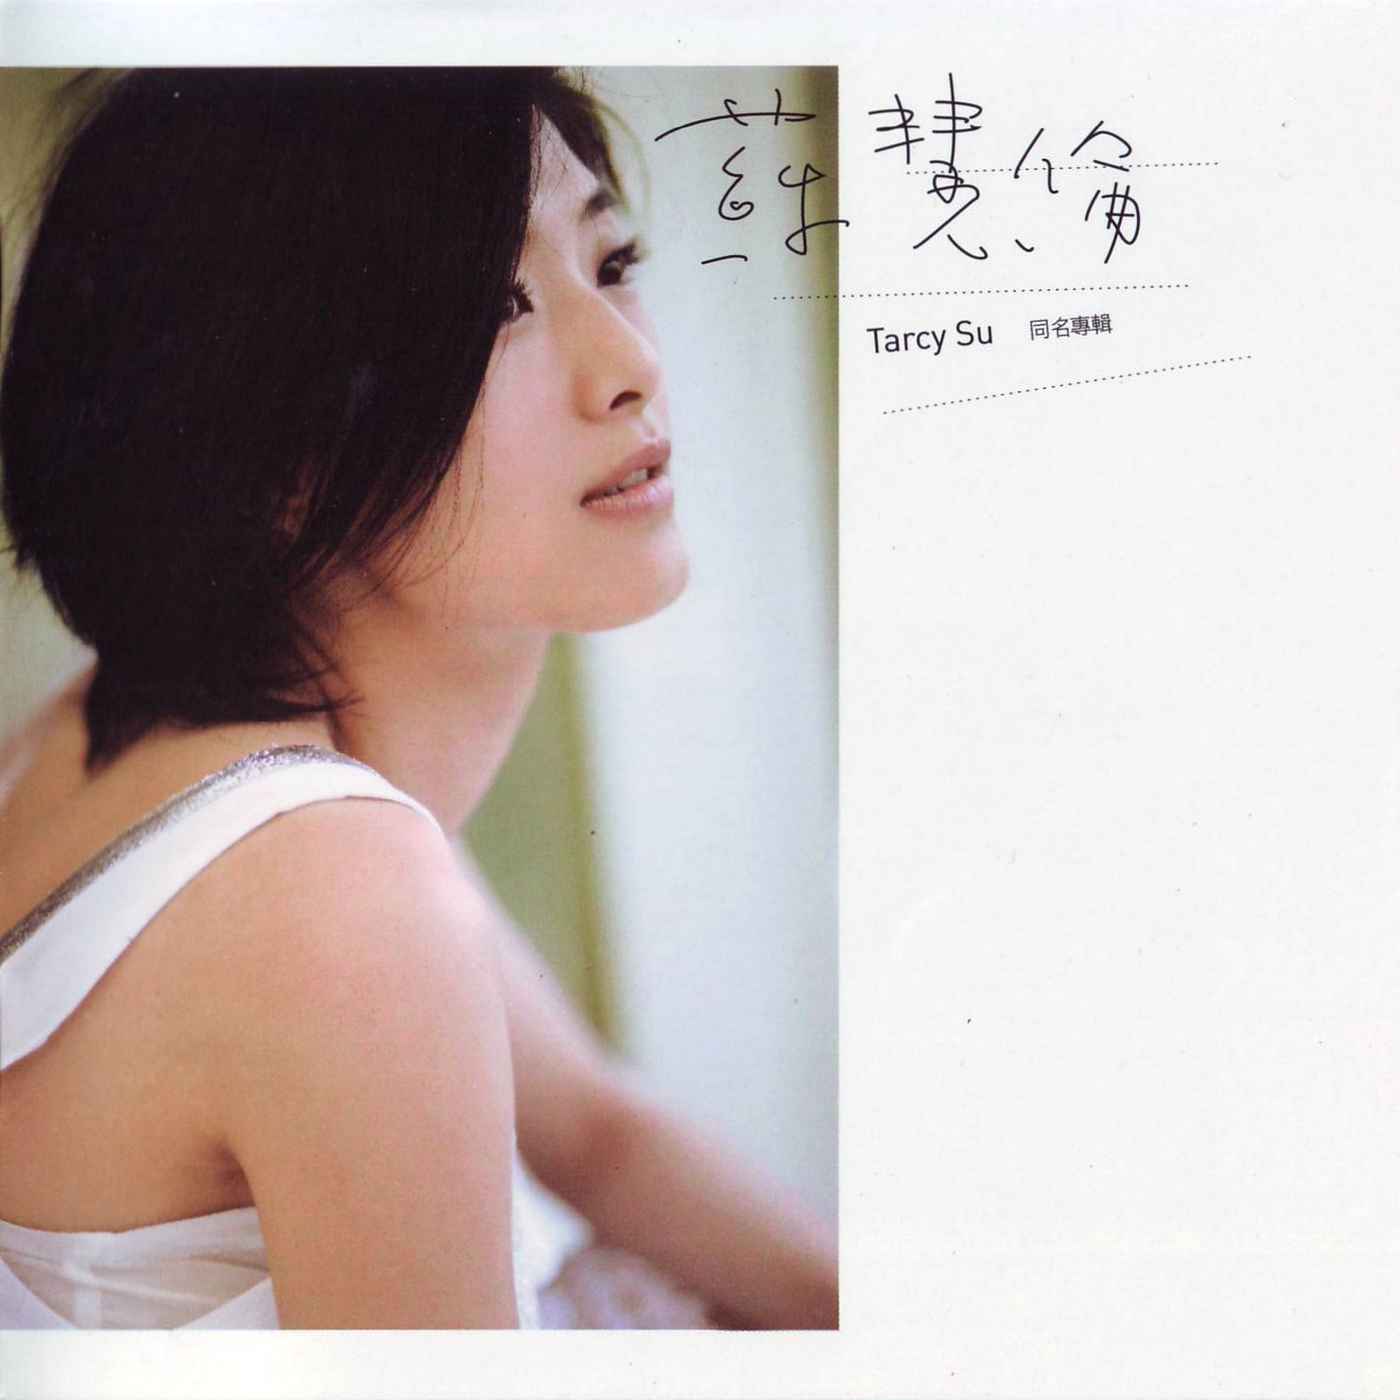 苏慧伦-《Tracy Su 同名专辑》